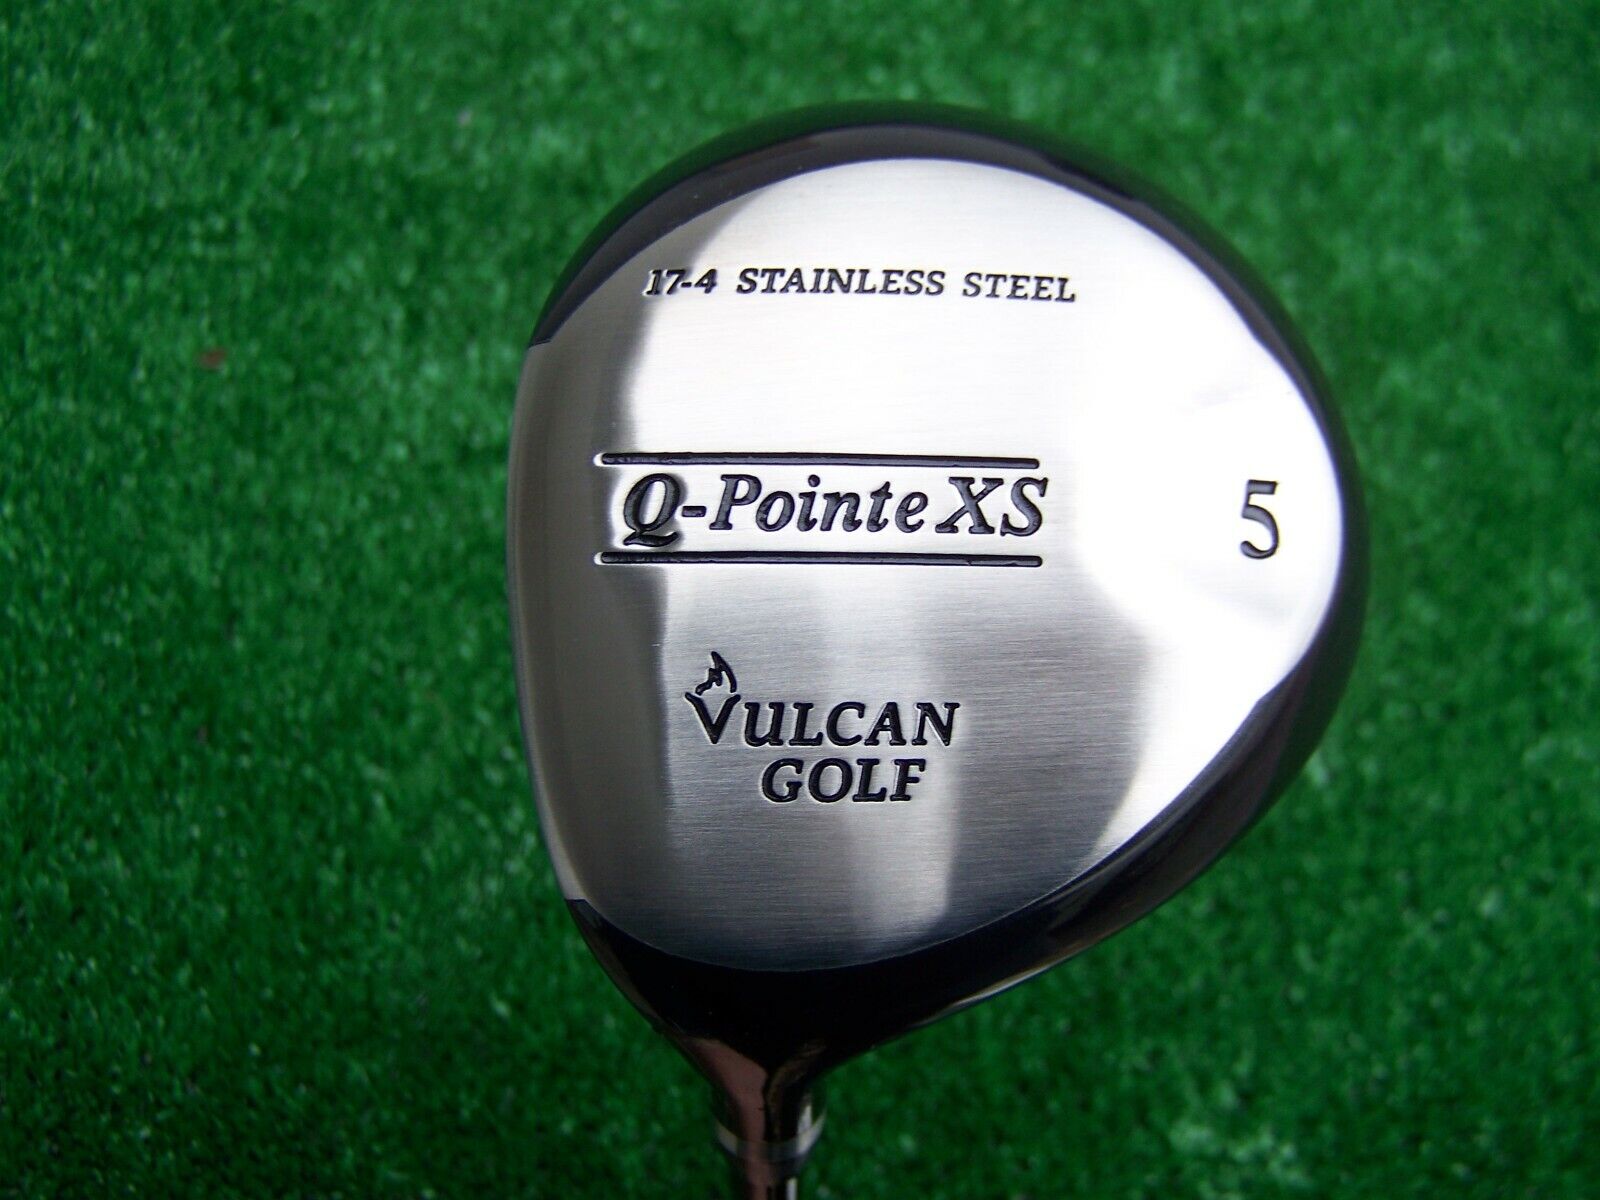 Vulcan Golf Q-Pointe XS 19* 5 Fairway Wood Firm Flex Shaft LEFT HAND NEW LH